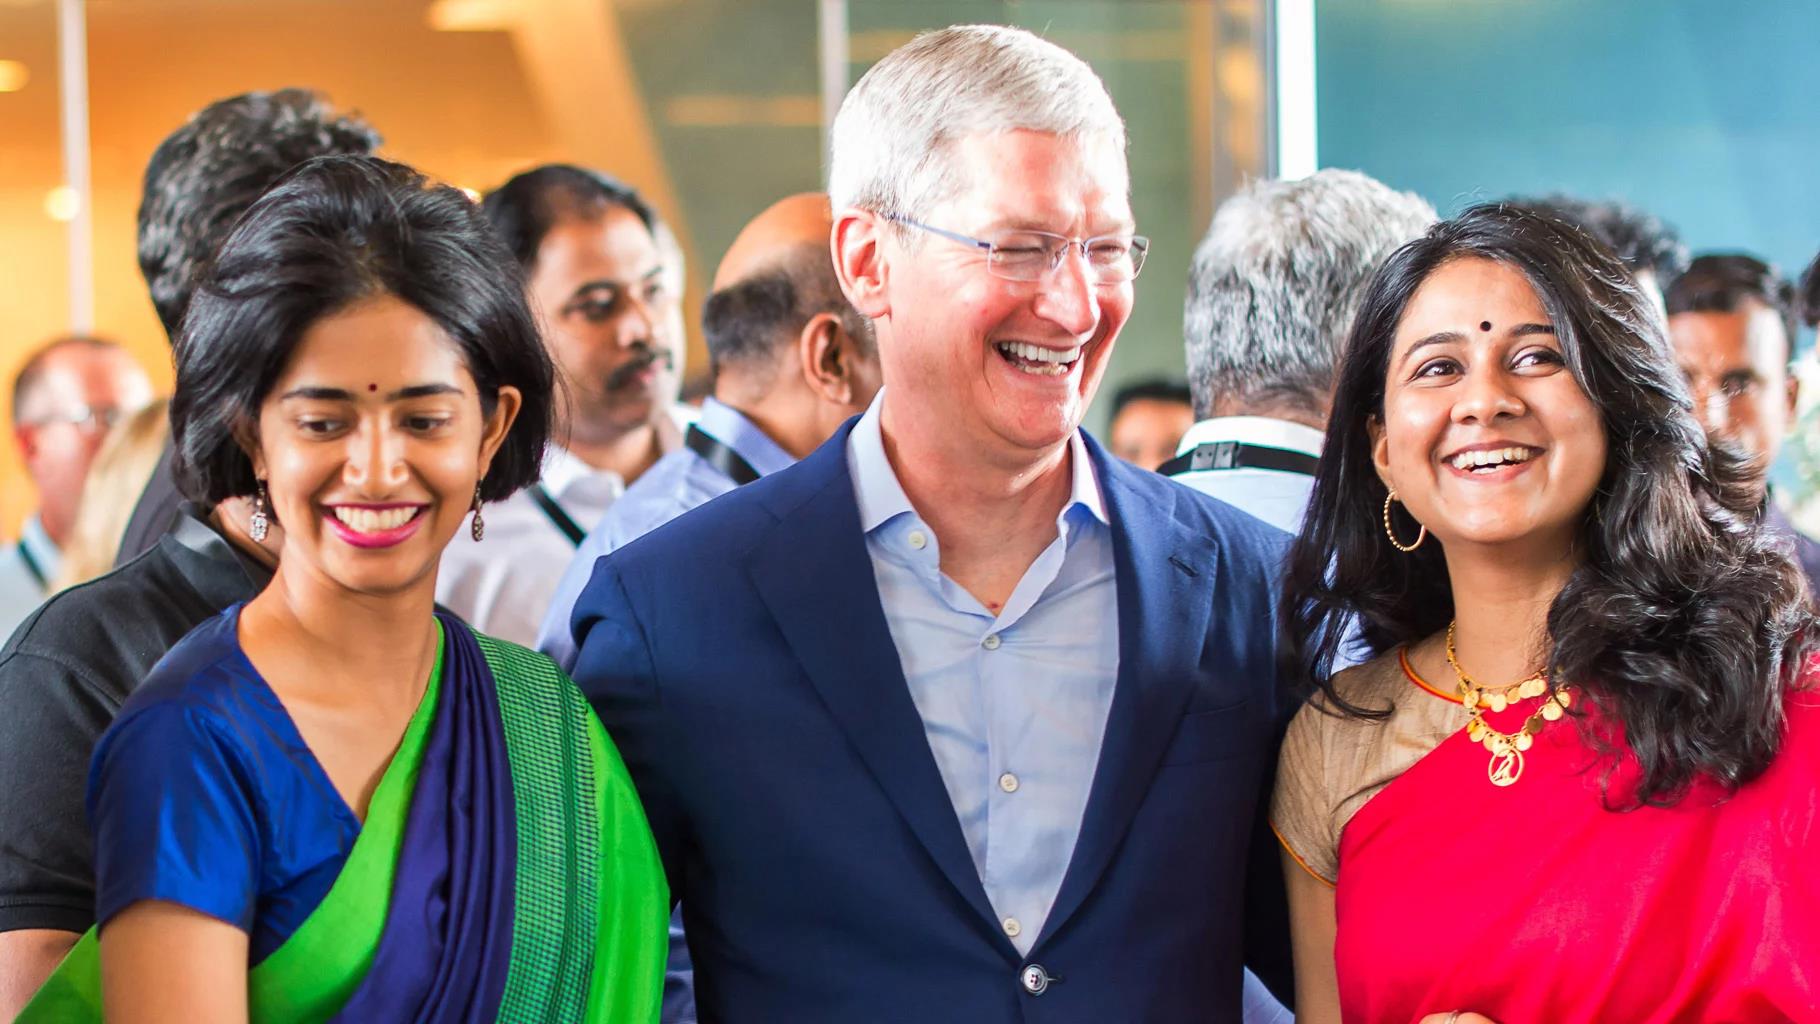 Apple, Hint üretimi iPhone ihracatına başladı